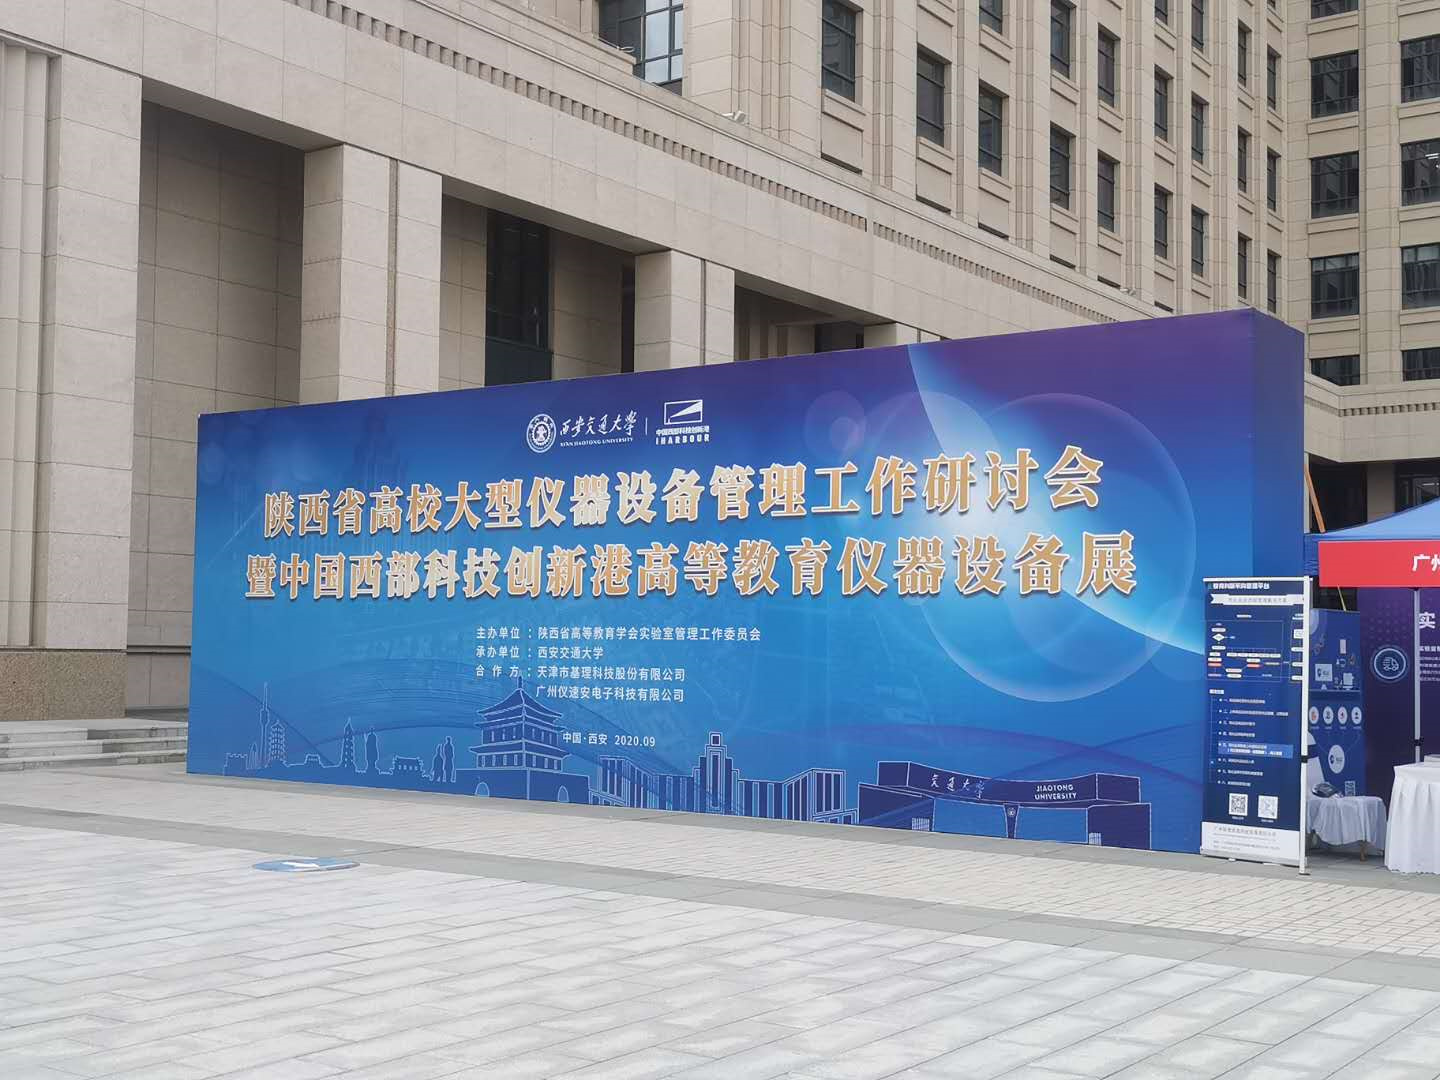 陕西省高校大型仪器装备开放共享钻研会-交大立异港